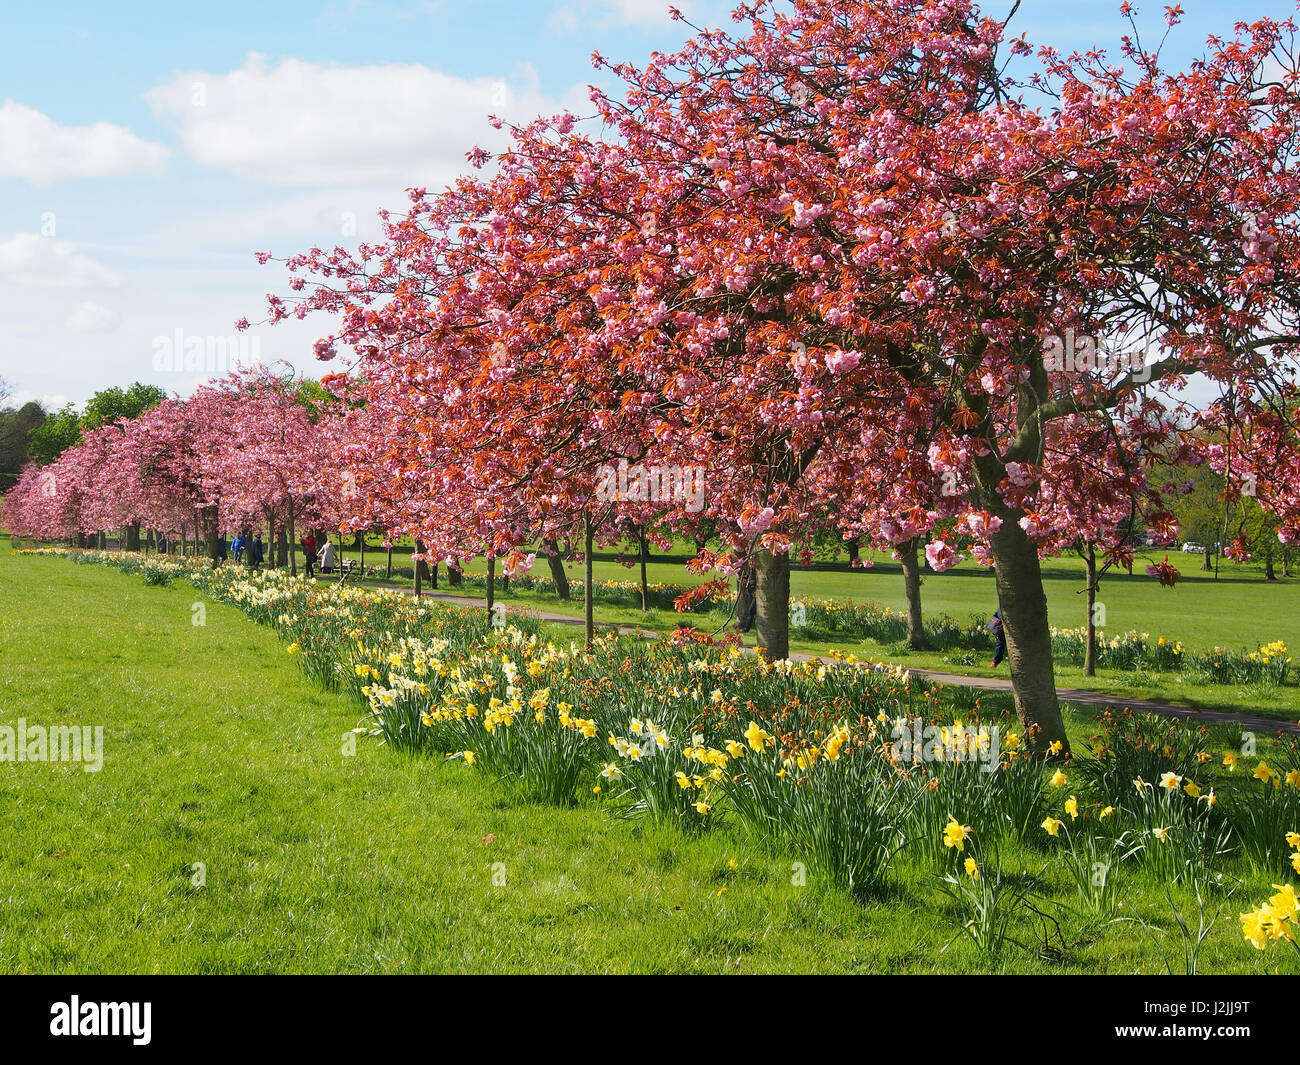 Fleur Rose sur la plante ornementale des cerisiers (Prunus) dans le Stray, Harrogate, North Yorkshire, avec un ciel bleu, le long d'une journée de printemps en avril. Banque D'Images